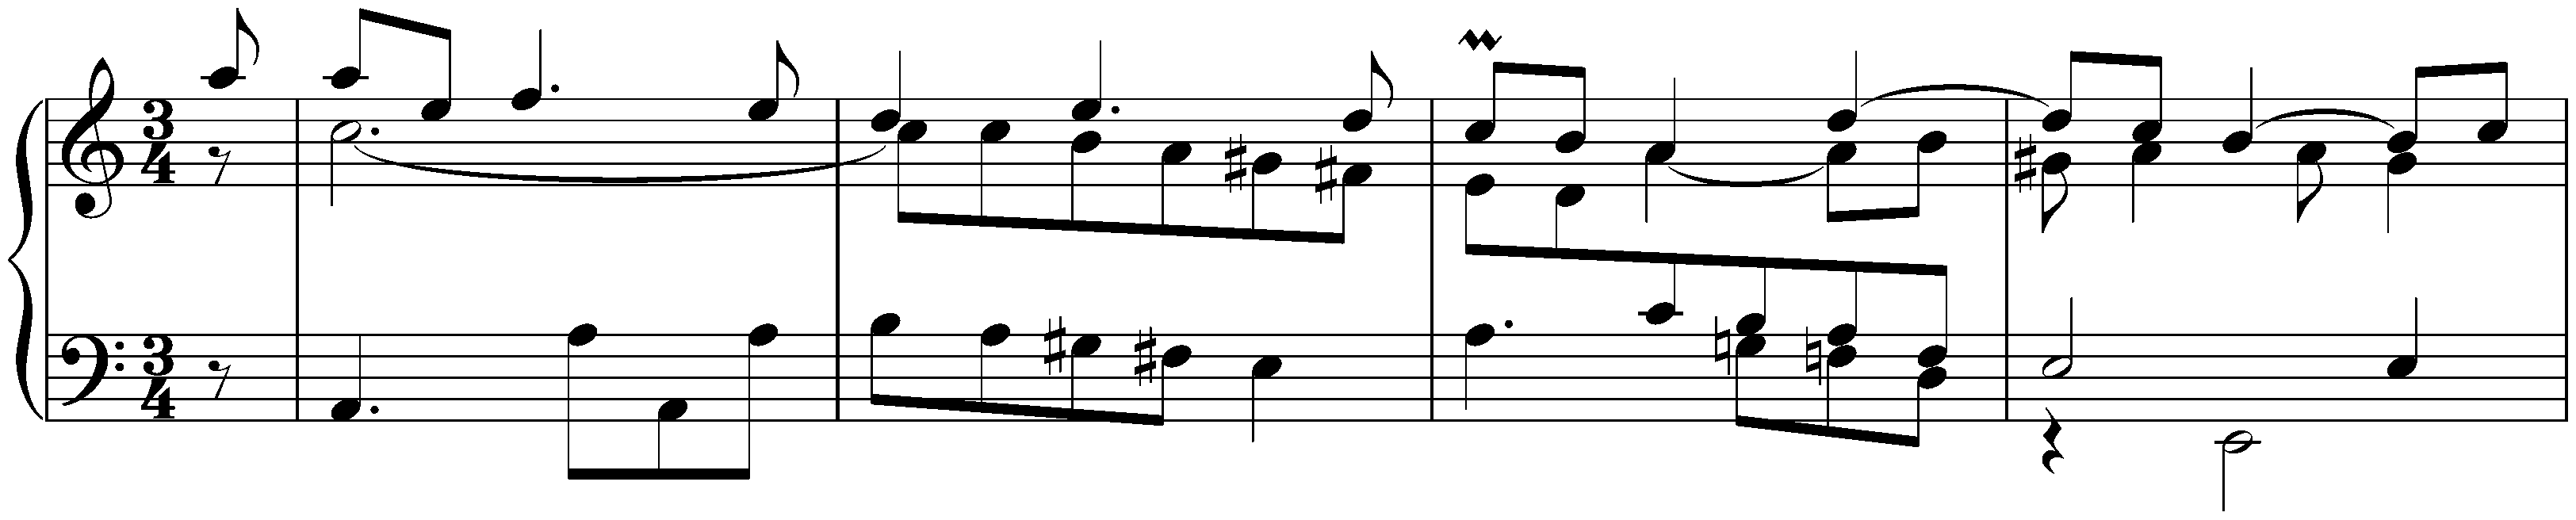 Sonata in A minor after Johann Adam Reincken, BWV 965; 6. Sarabande